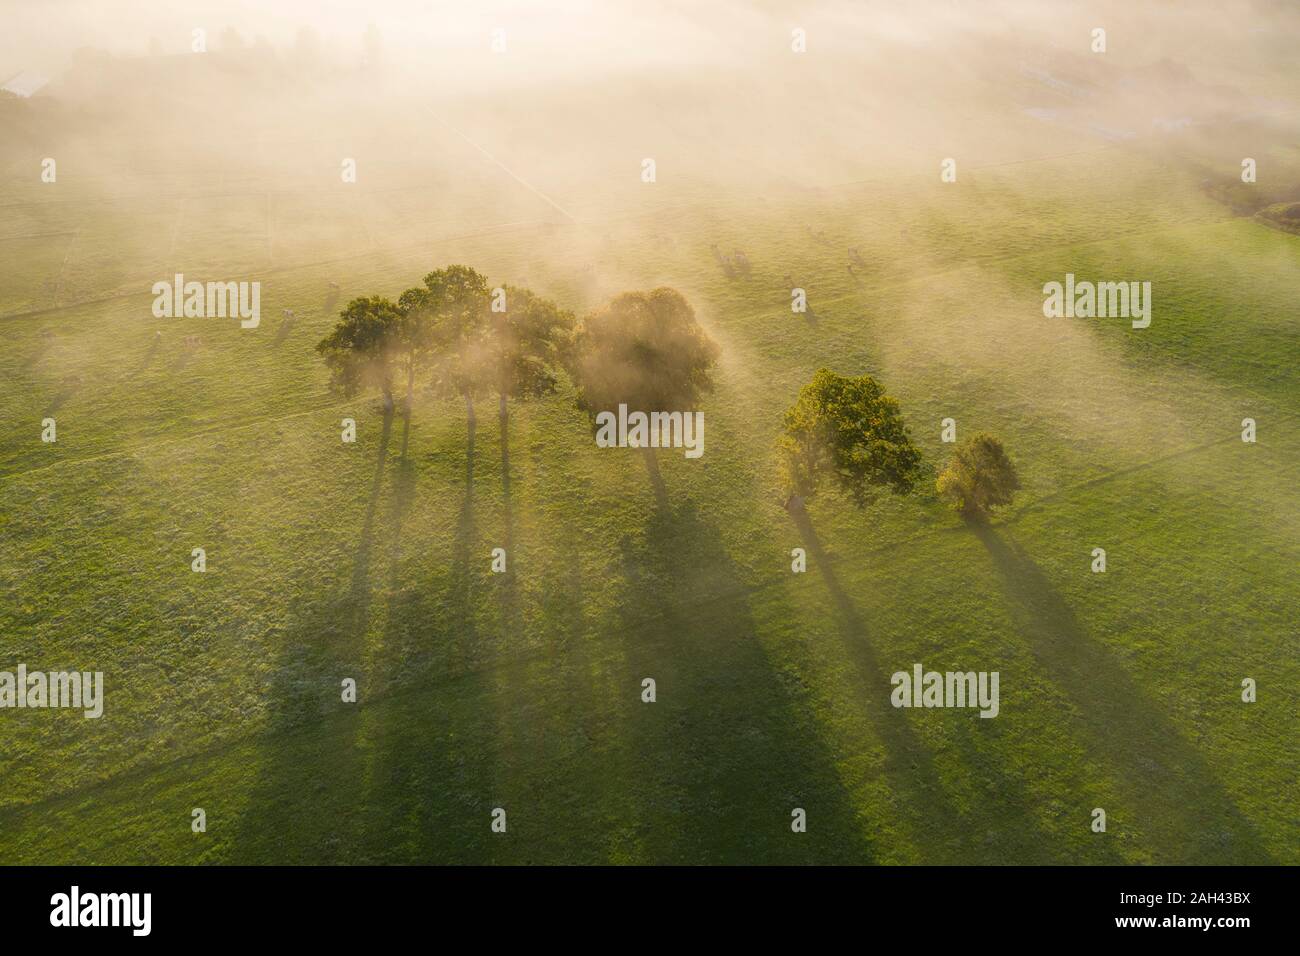 L'Allemagne, la Haute-Bavière, Greiling, vue aérienne de champ et arbres dans le brouillard au lever du soleil Banque D'Images